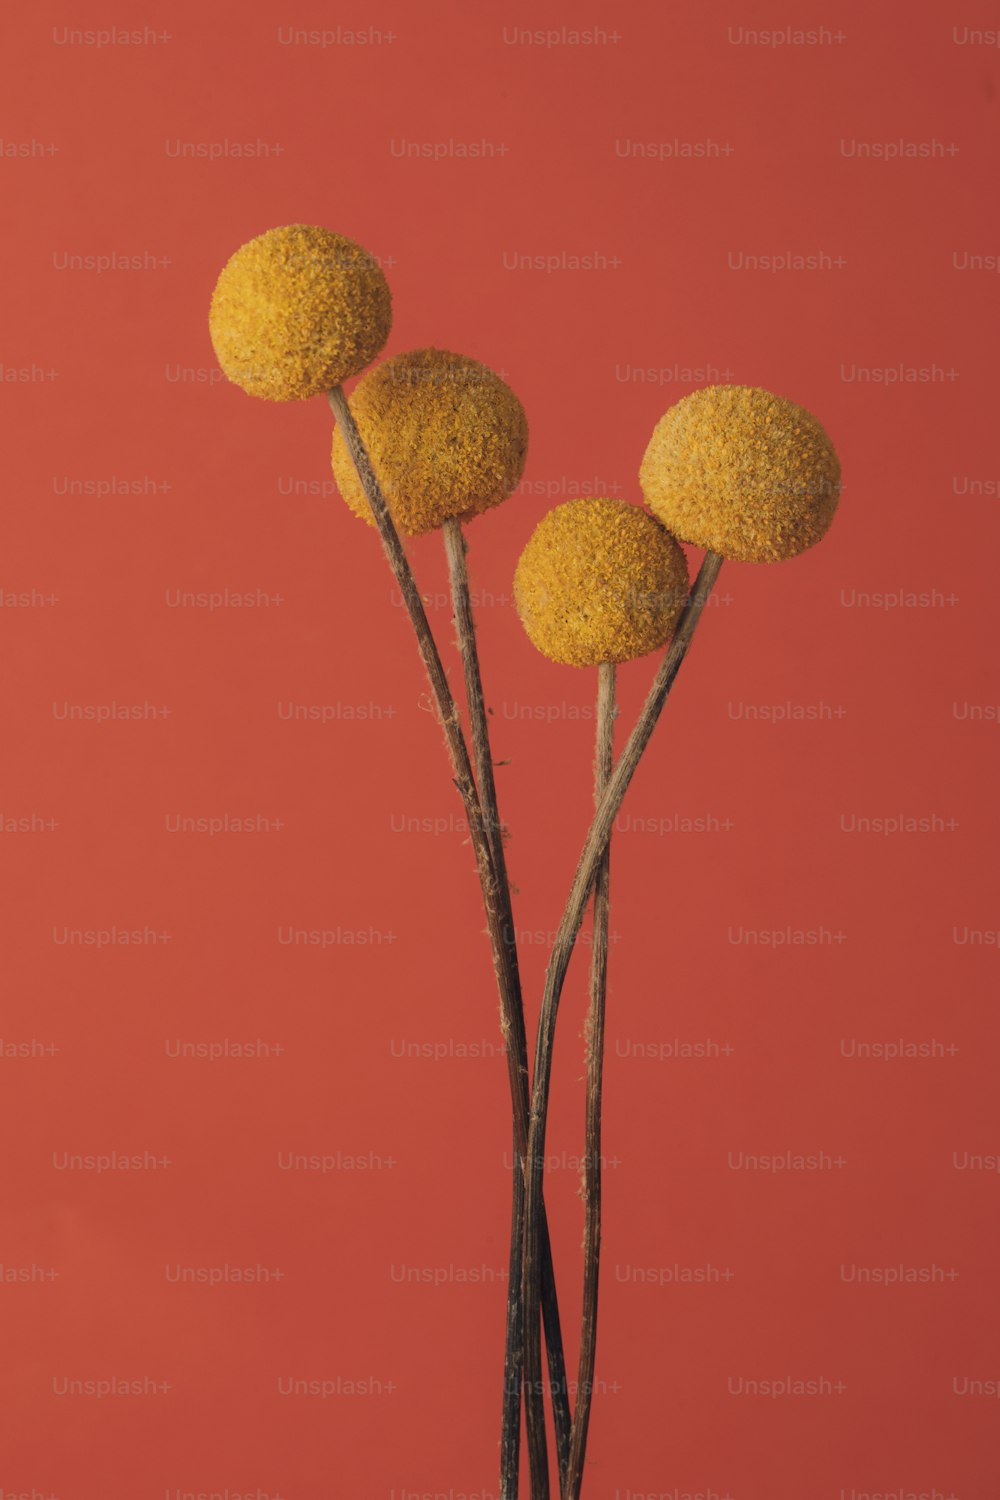 Drei gelbe Blumen stehen in einer Vase auf rotem Grund